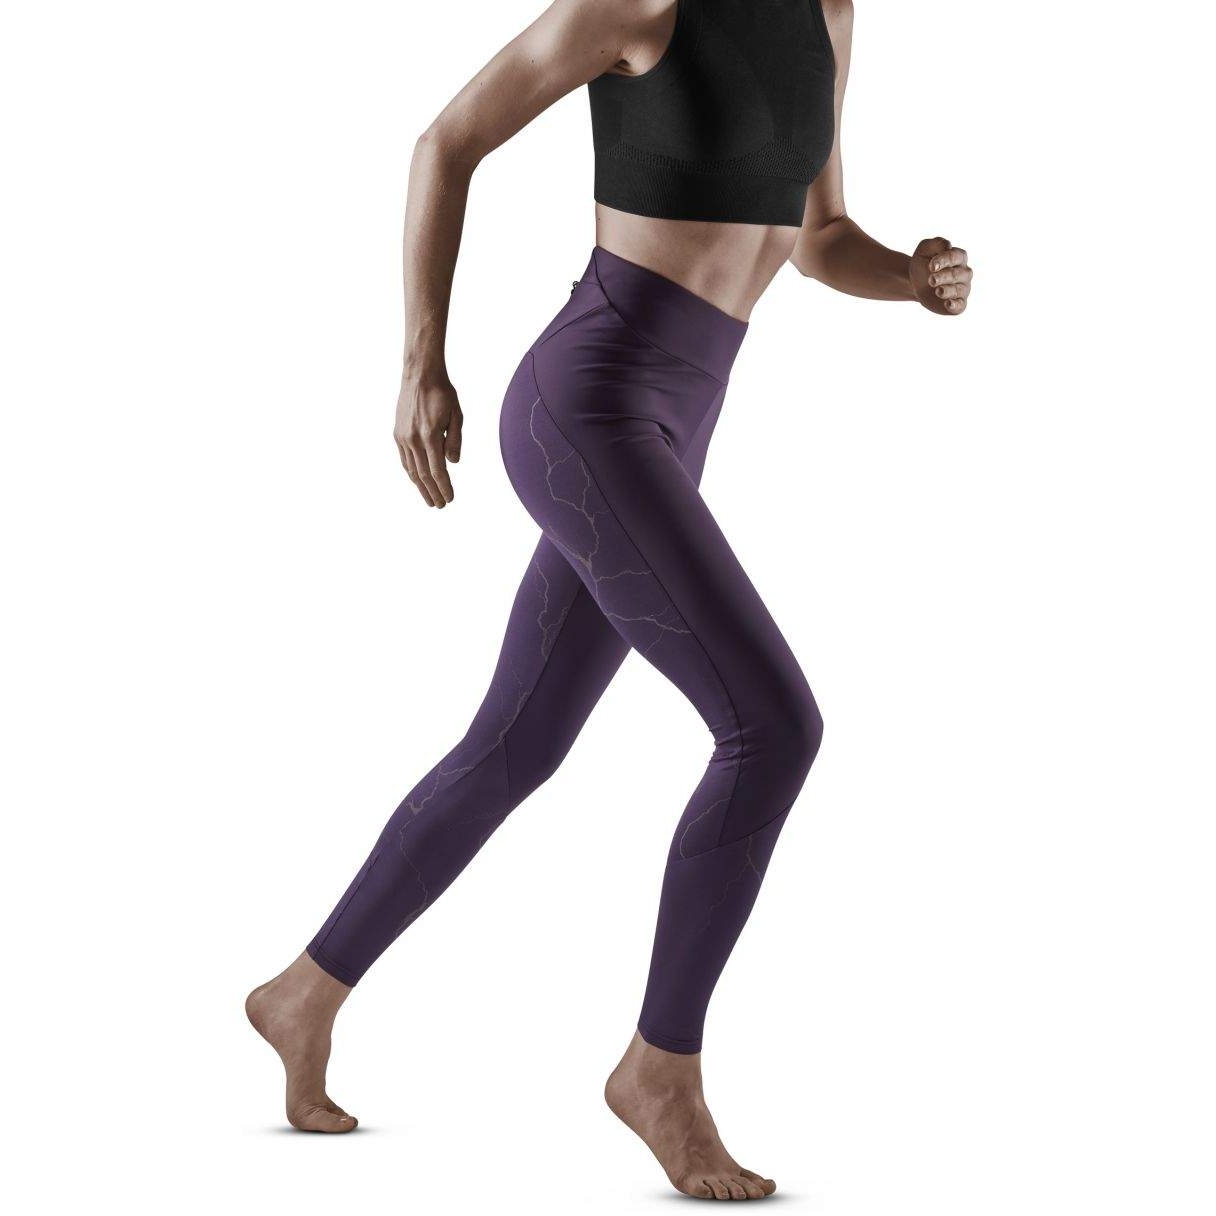 Produktbild von CEP Reflective Tights Damen - purple